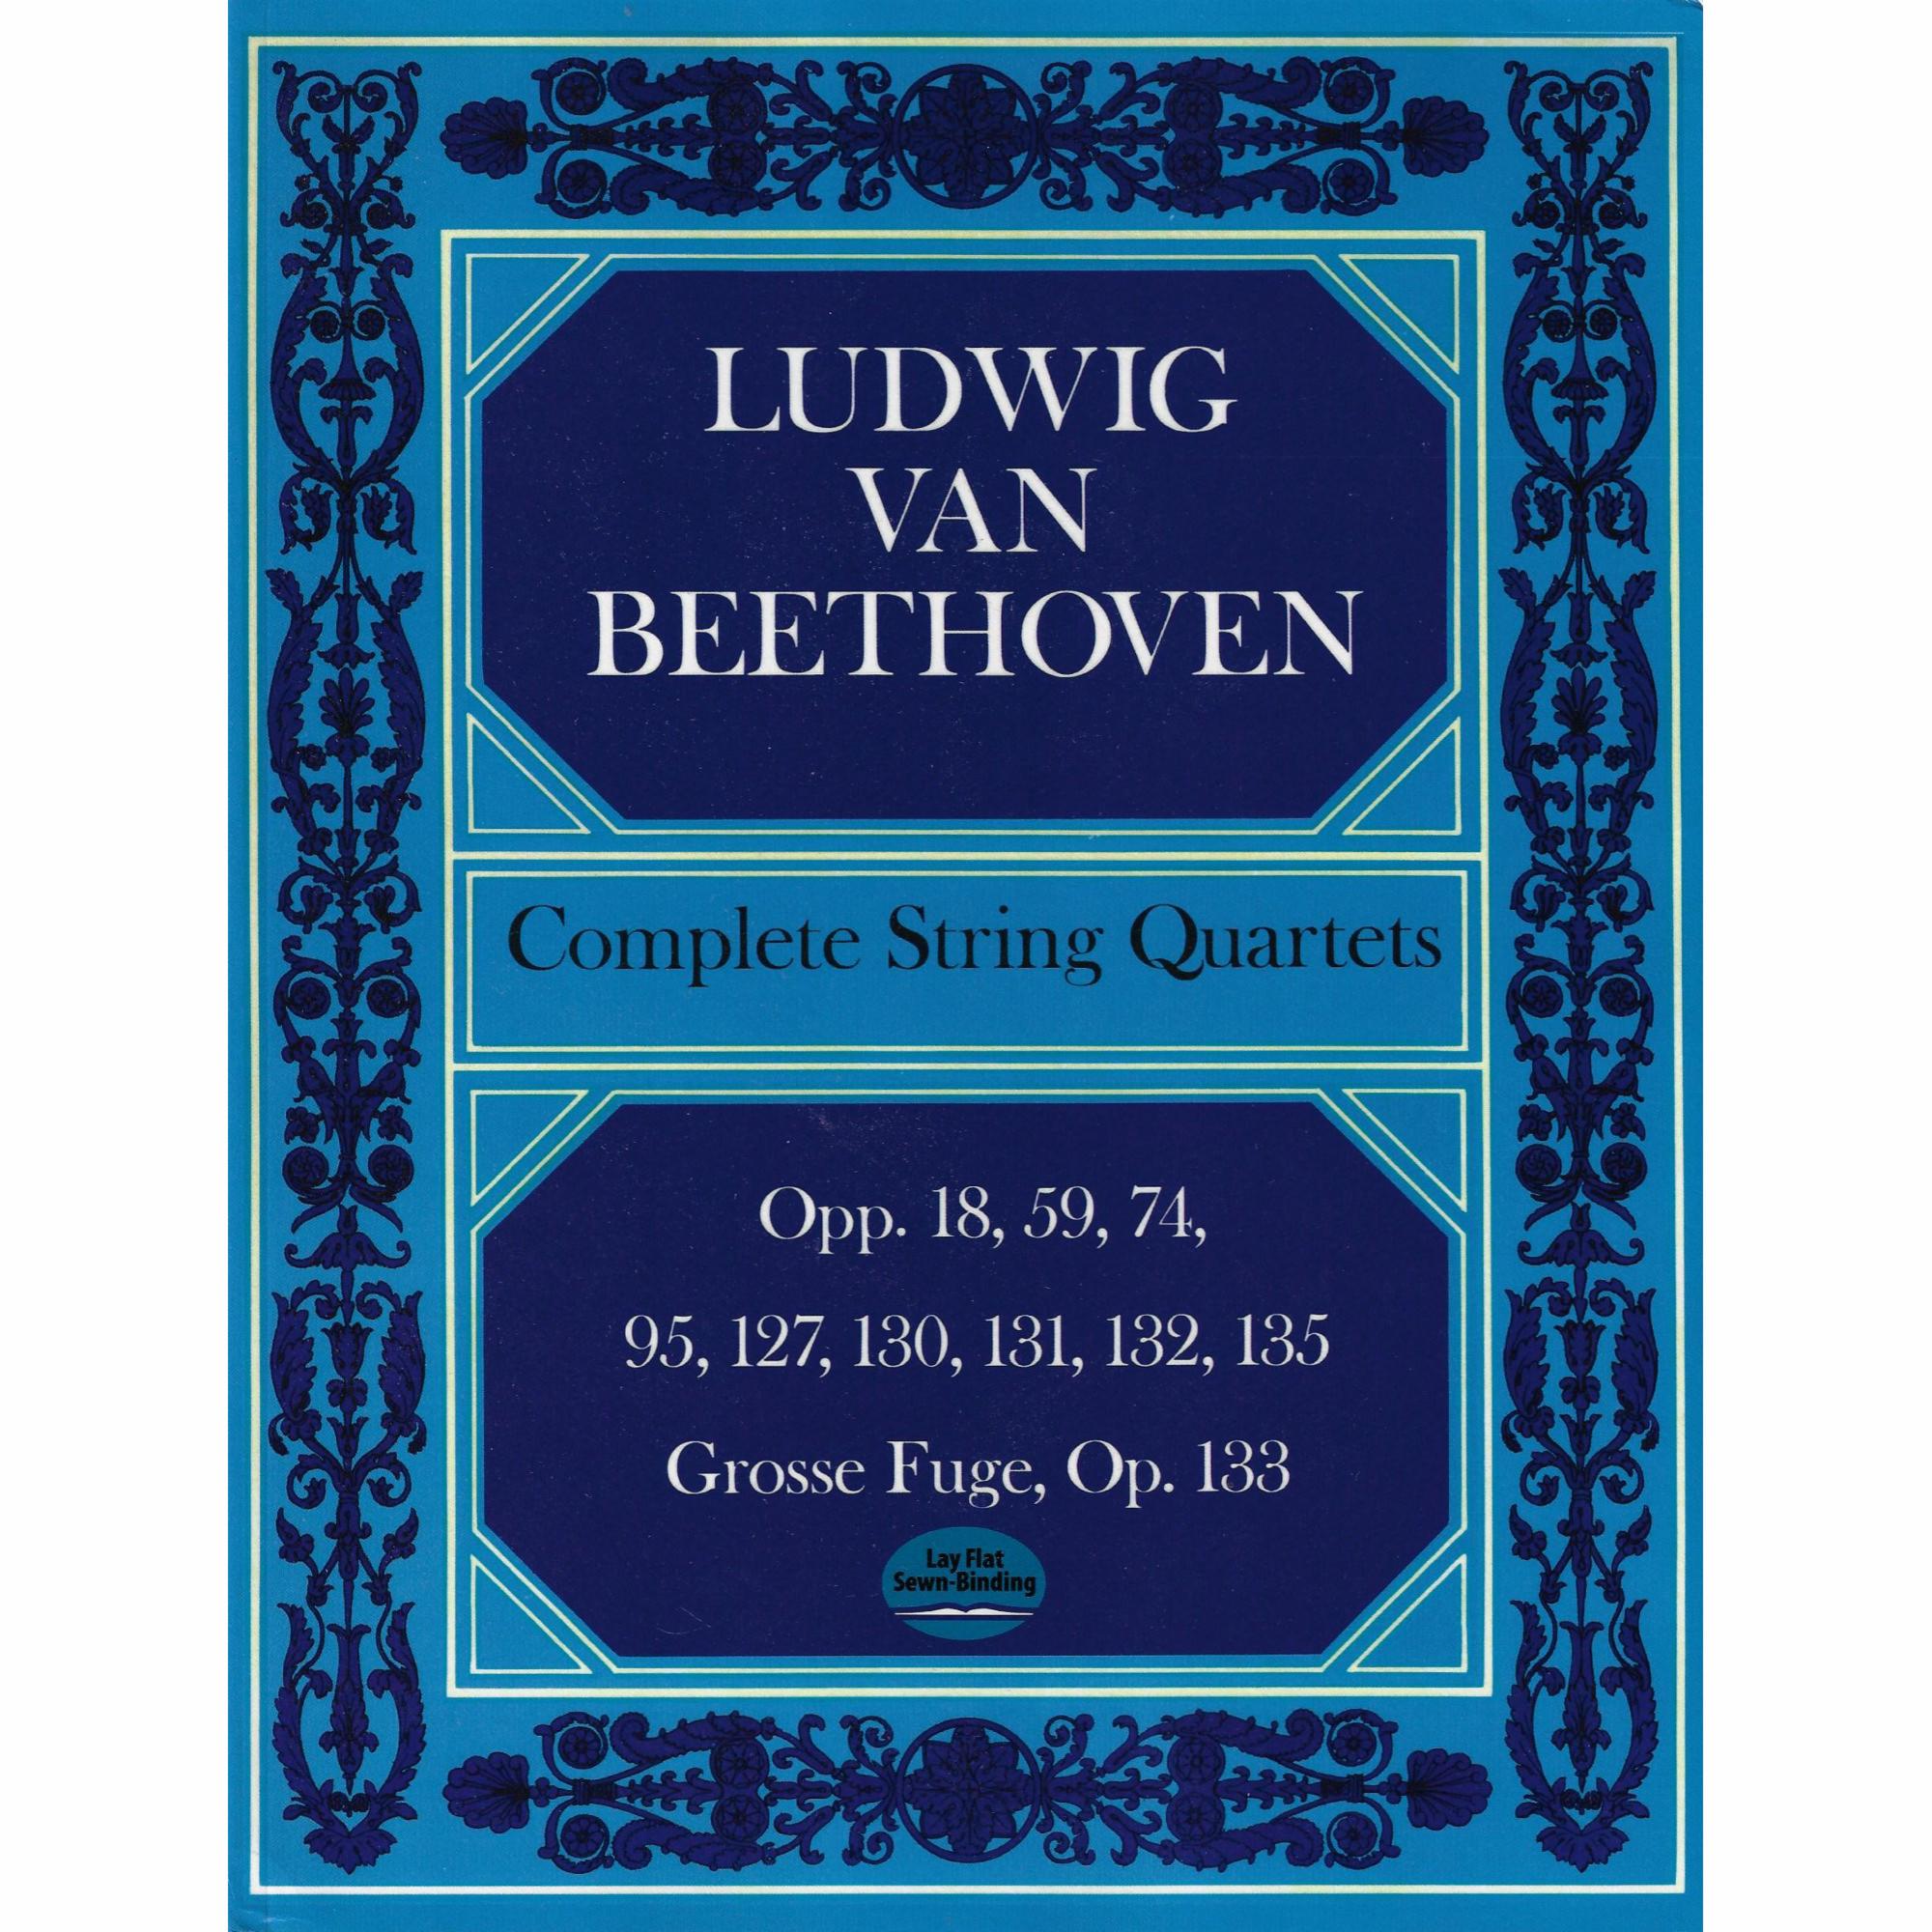 Beethoven -- Complete String Quartets